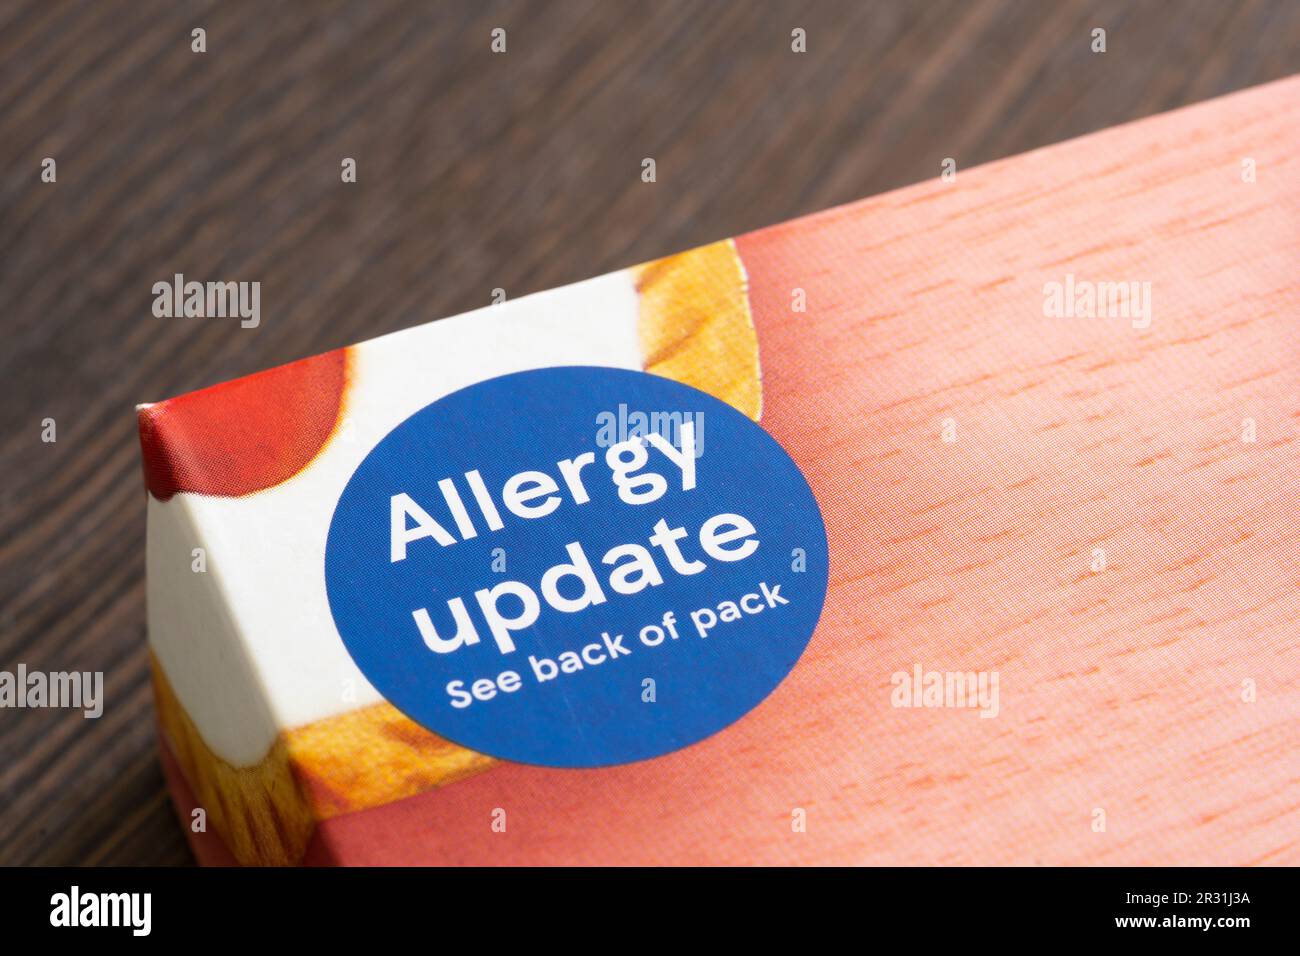 Étiquette de mise à jour des allergies sur le paquet de tartes aux cerisiers en merisier de marque Tesco, Angleterre. Concept: Allergies alimentaires, allergies alimentaires, réaction allergique Banque D'Images